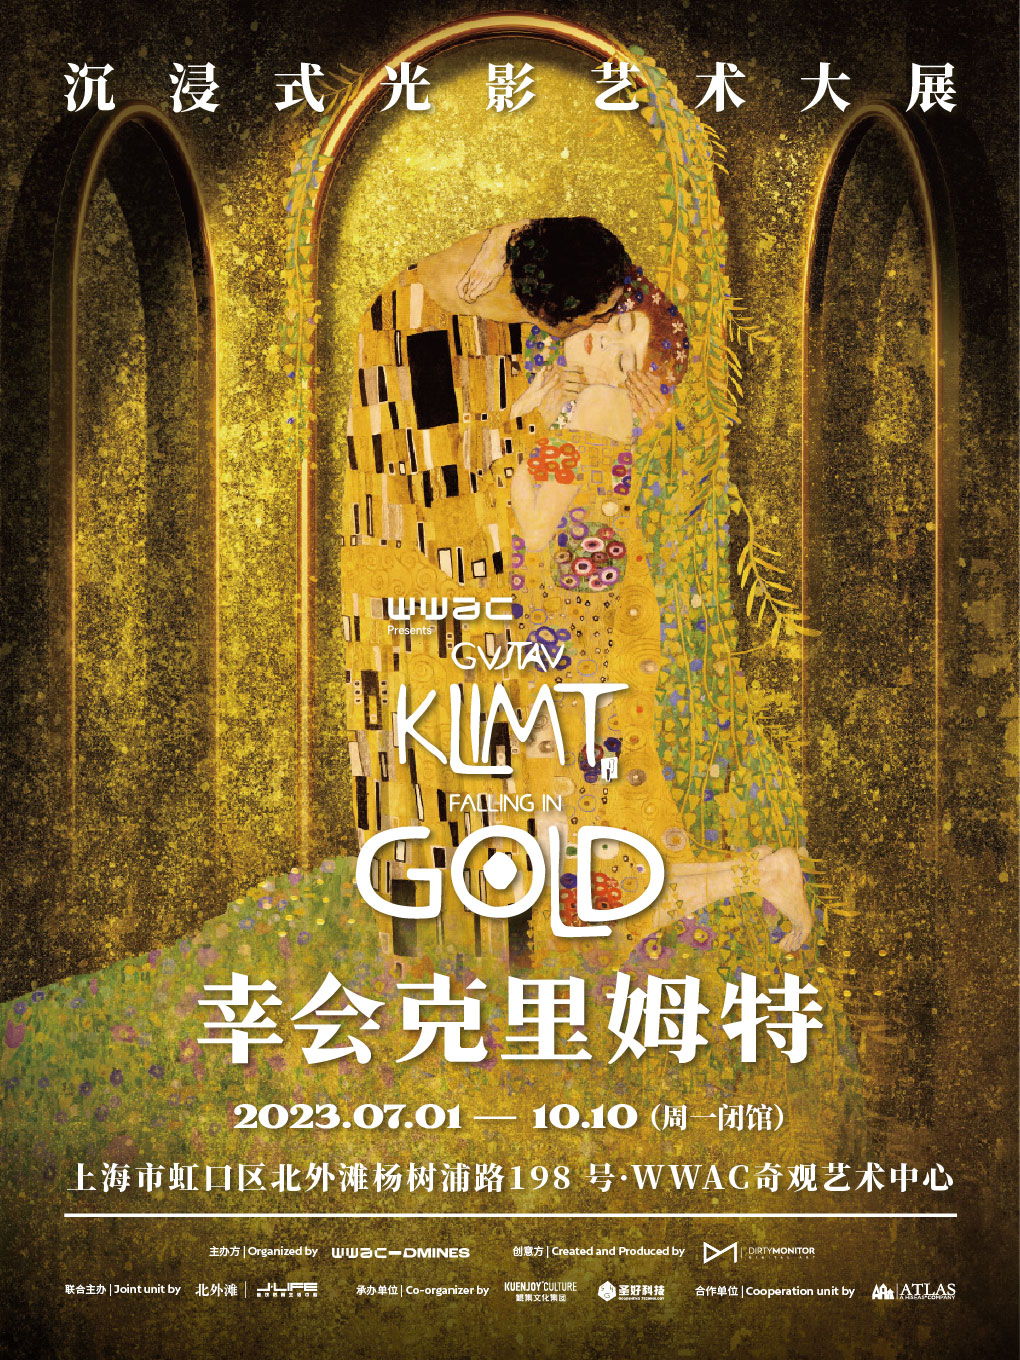 2023上海幸會克里姆特光影藝術大展(時間安排+門票價格+觀展攻略)一覽